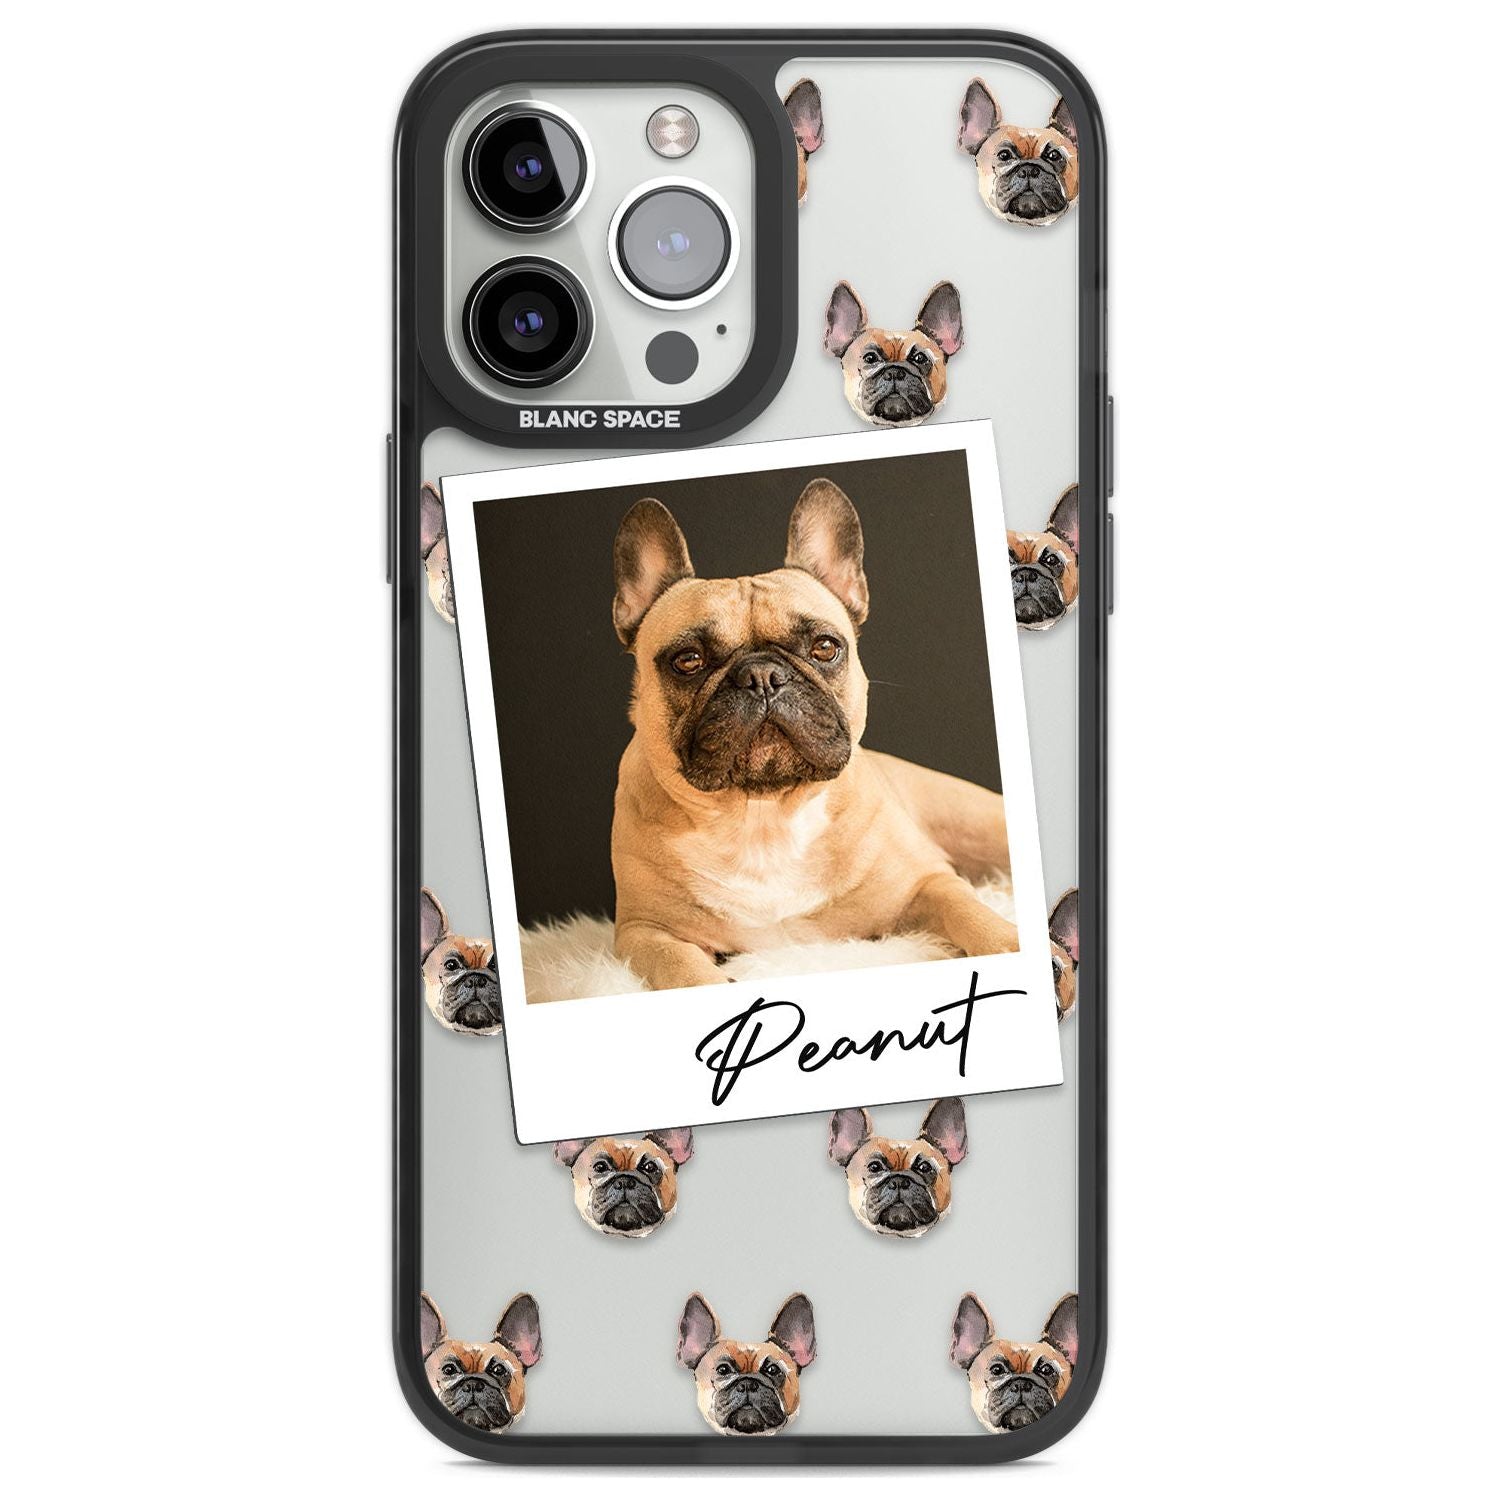 Personalised French Bulldog, Tan - Dog Photo Custom Phone Case iPhone 13 Pro Max / Black Impact Case,iPhone 14 Pro Max / Black Impact Case Blanc Space